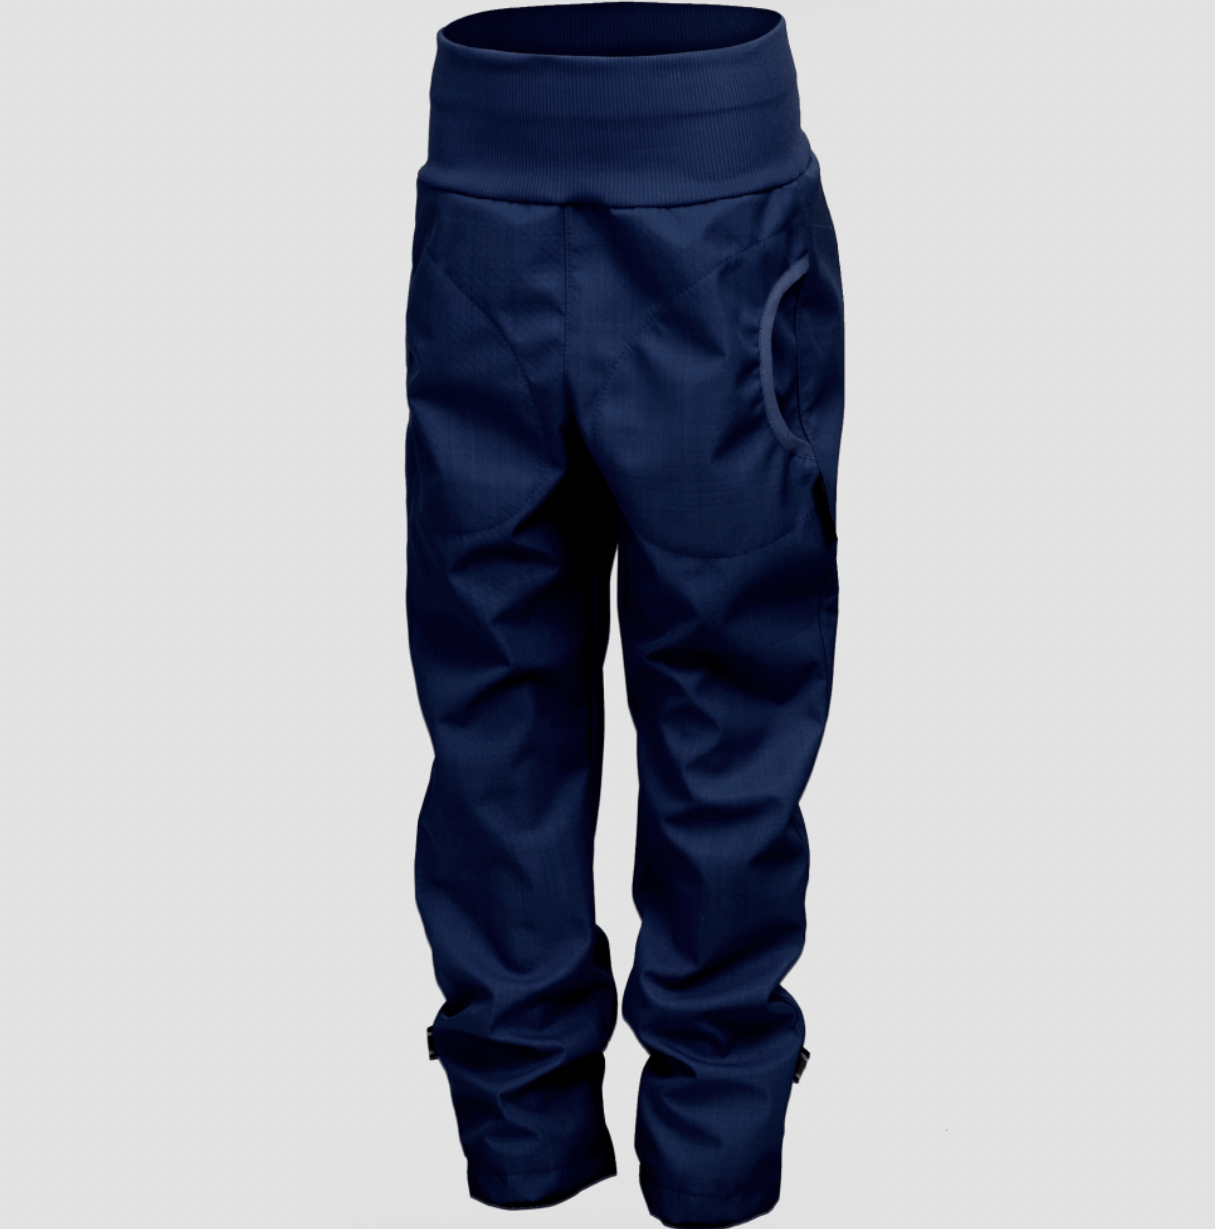 Softshellové kalhoty bambus/kapsy Jeans new vel. 134-140